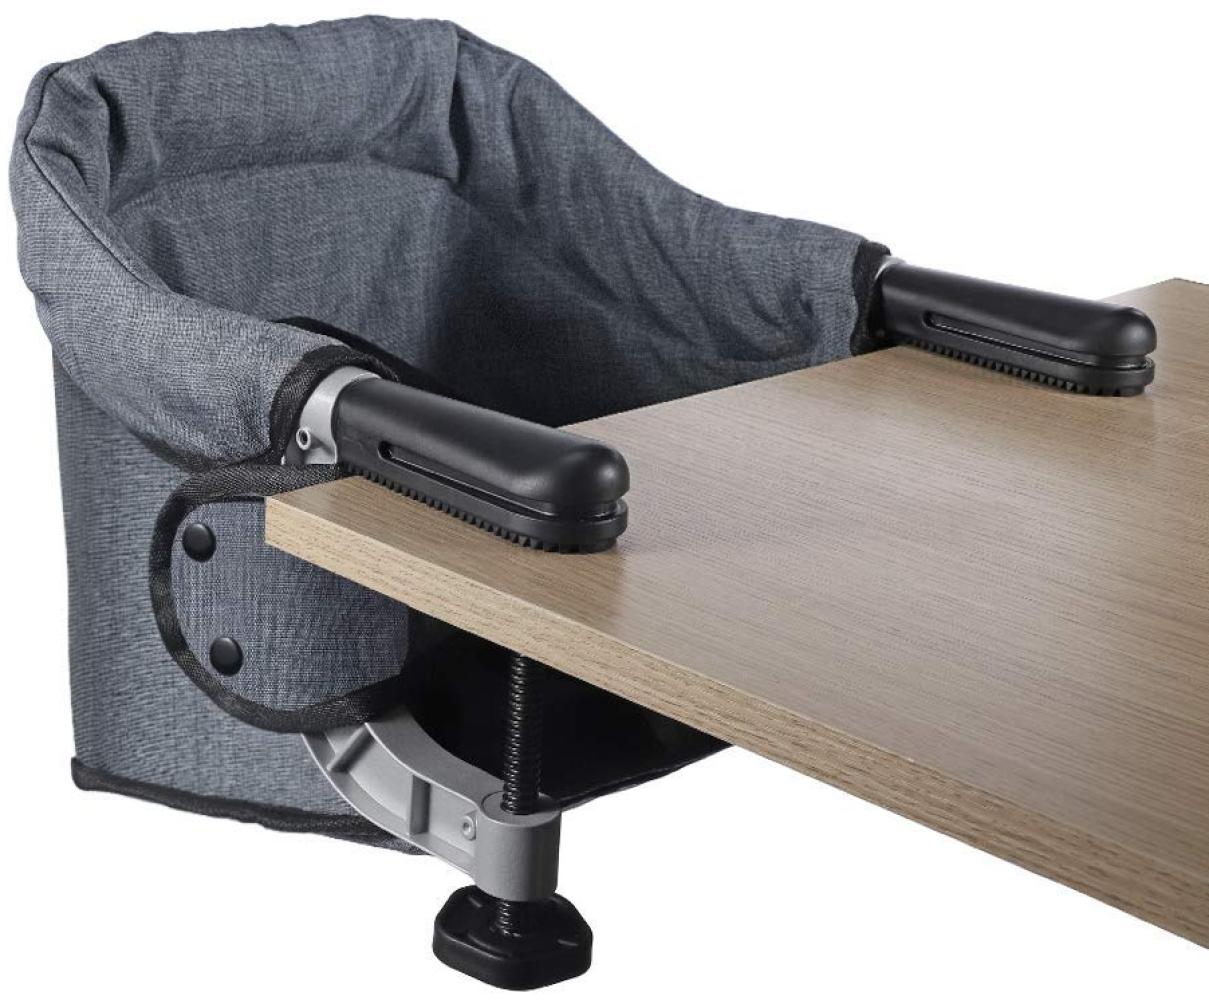 Tischsitz Faltbar Baby Hochstuhl Sitzerhöhung Portable Stabile Struktur Stuhlsitz mit Transportbeutel, Ideal für zu Hause und Unterwegs(Grau) Bild 1